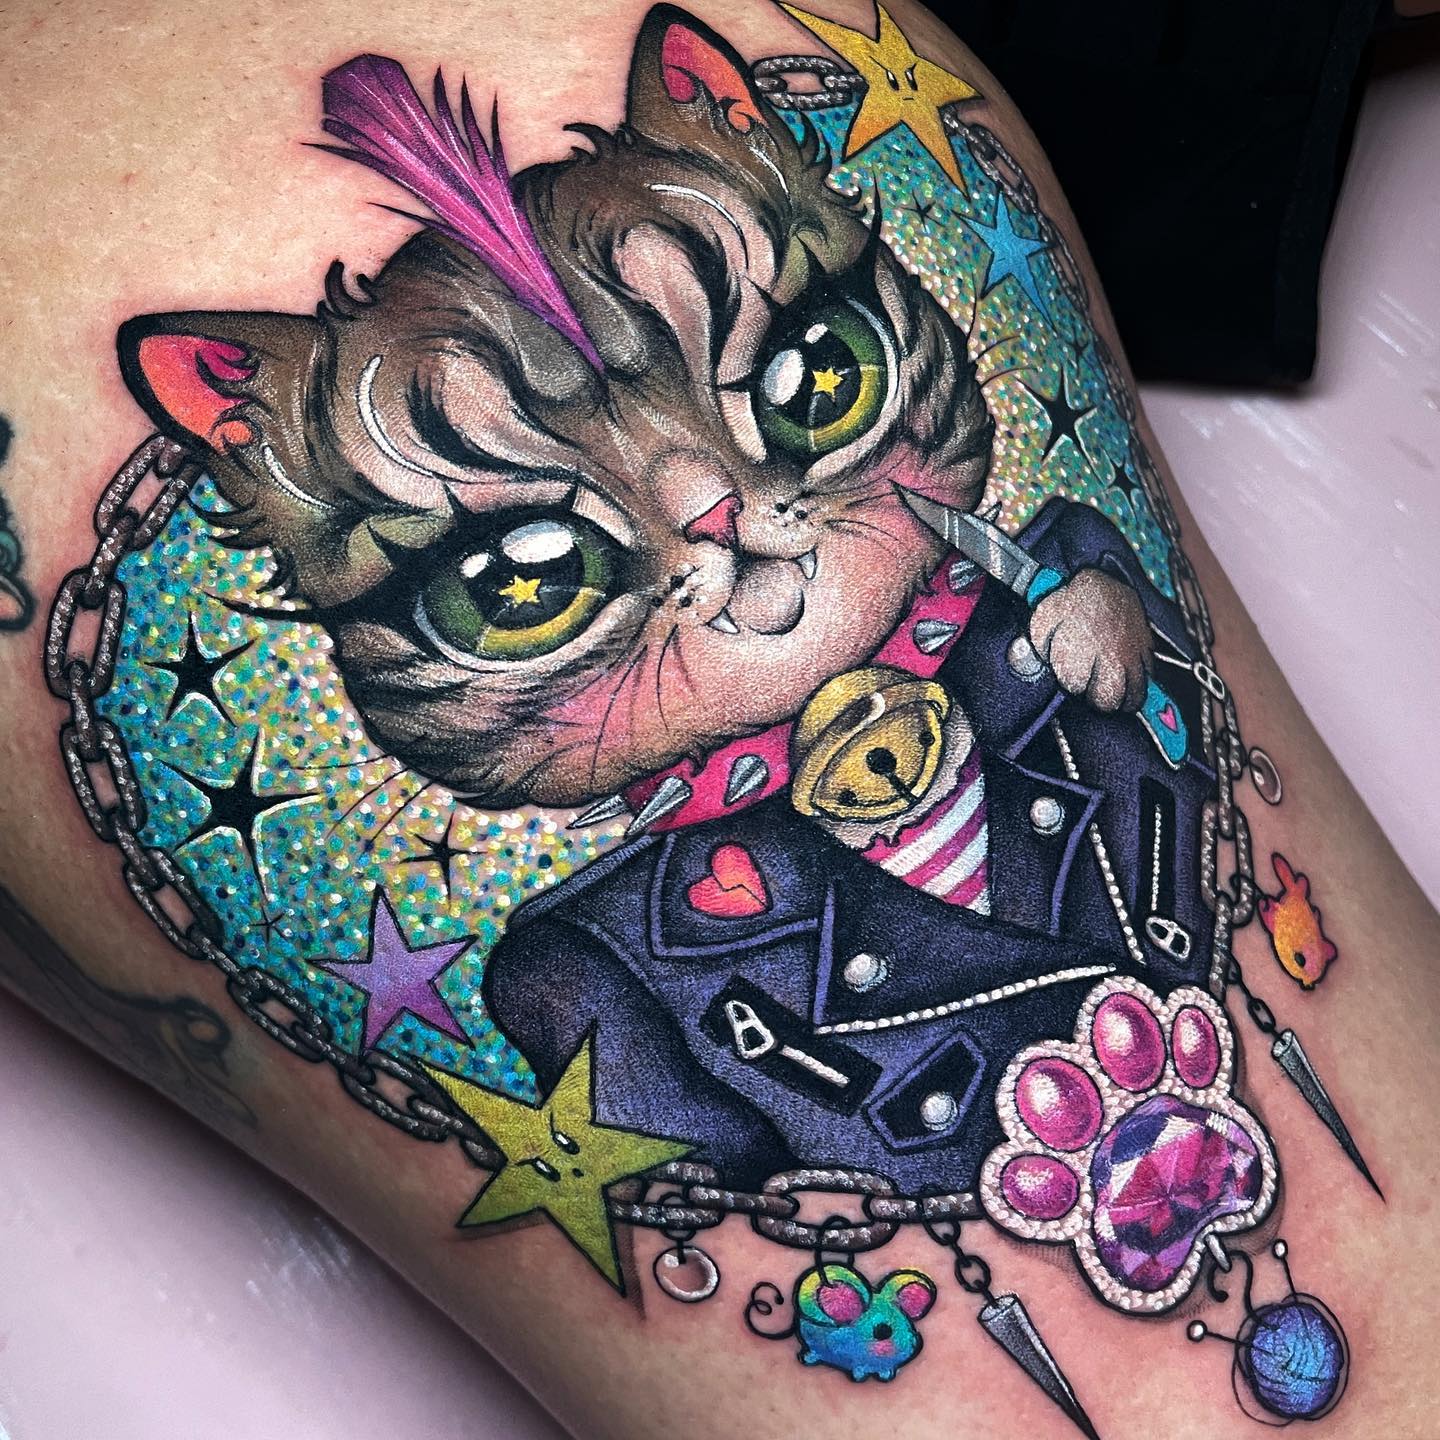 Tatuaje de gato brillante y colorido.